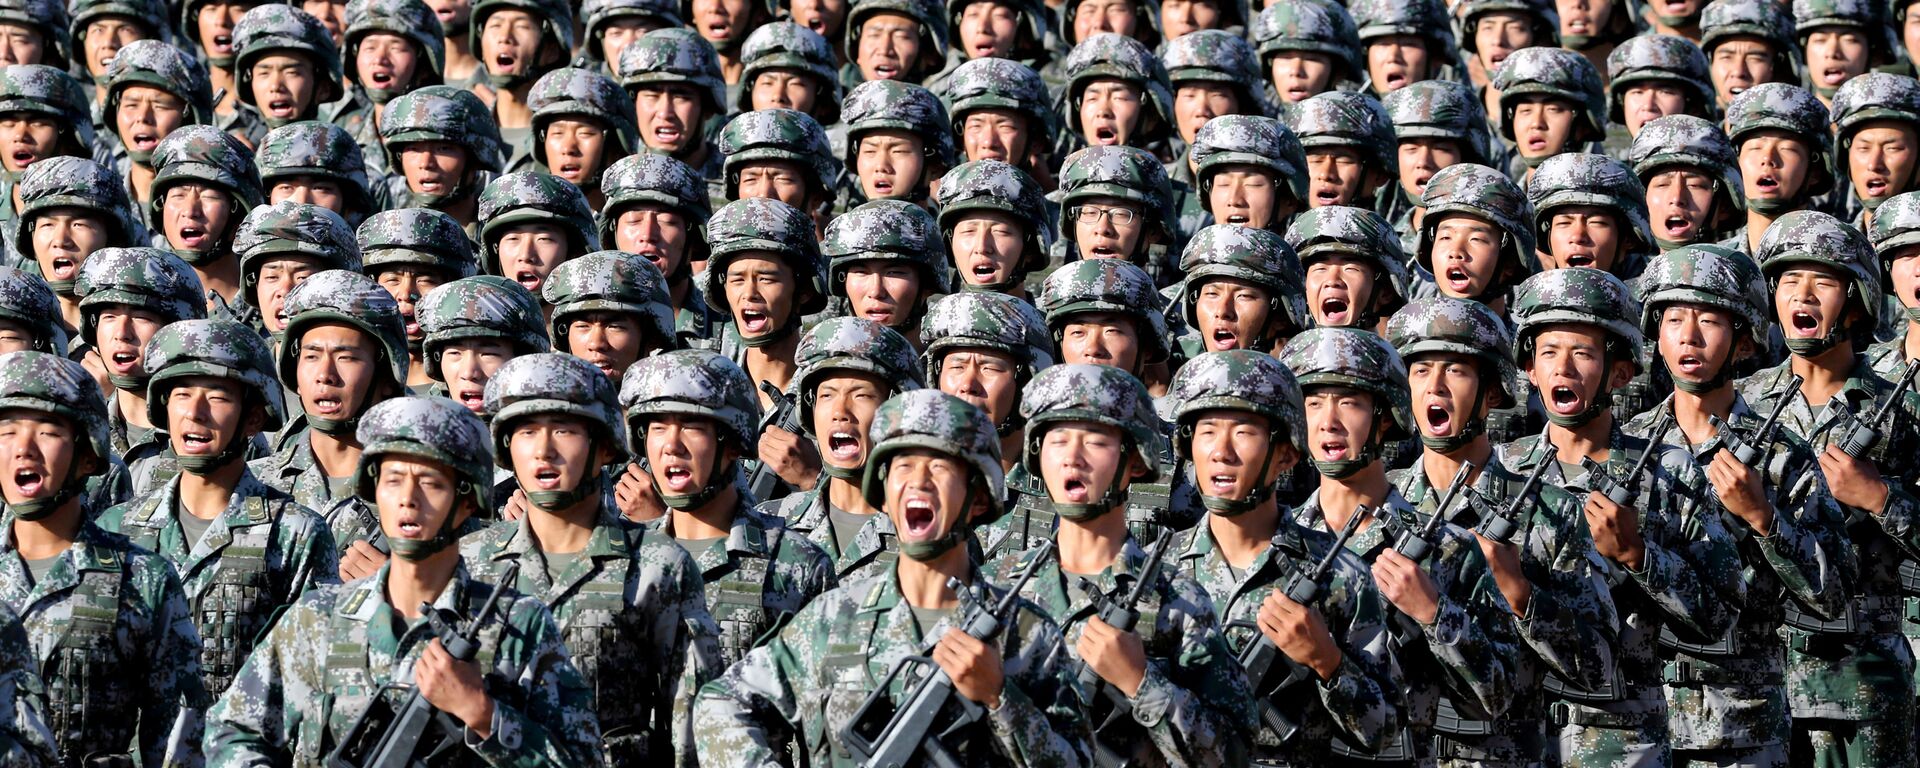 Militares do Exército de Libertação Popular se preparam para o desfile militar comemorativo do 90° aniversário da fundação do exército, na base militar de Zhurihe na China, em 30 de julho de 2017. - Sputnik Brasil, 1920, 18.10.2021